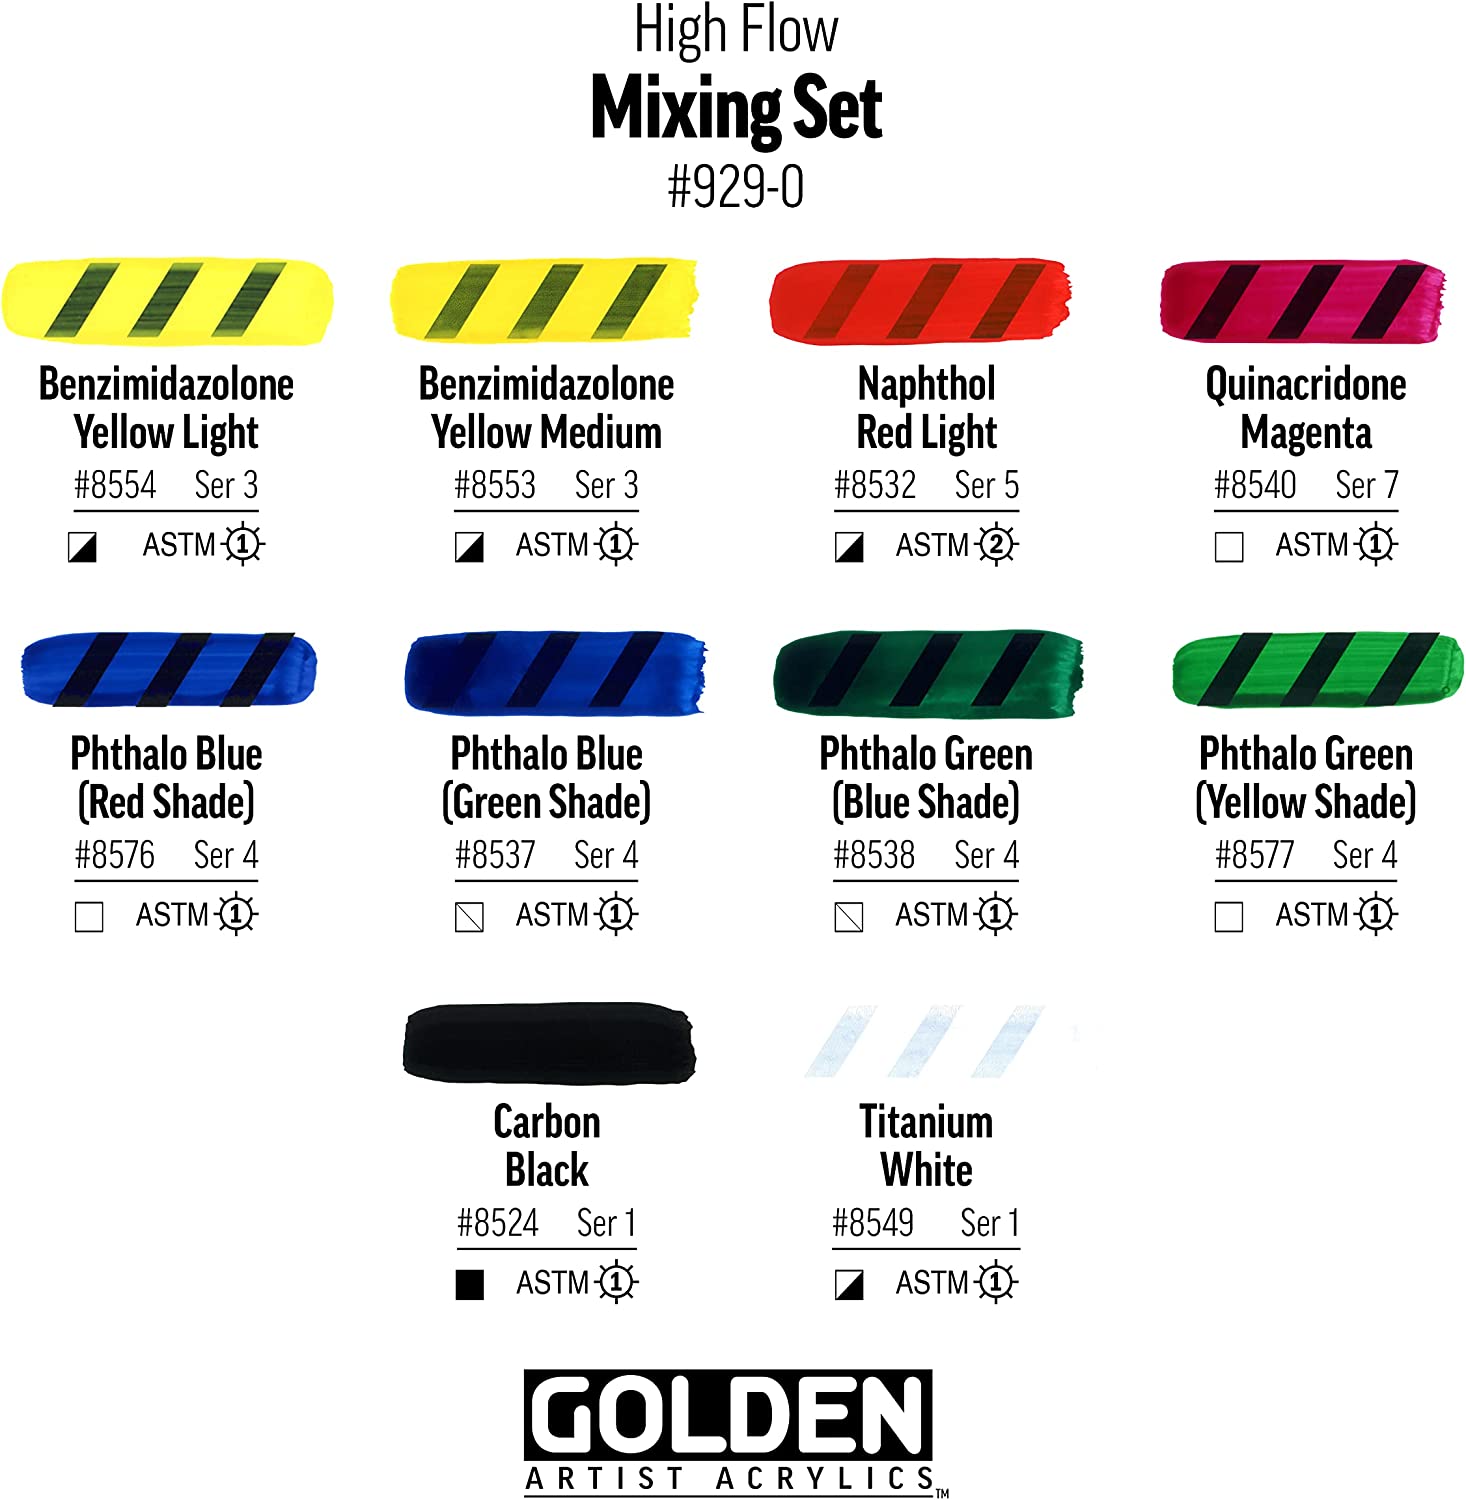 Golden High Flow Acrylic 1oz Transparent 10 Color Set - The Paint Chip